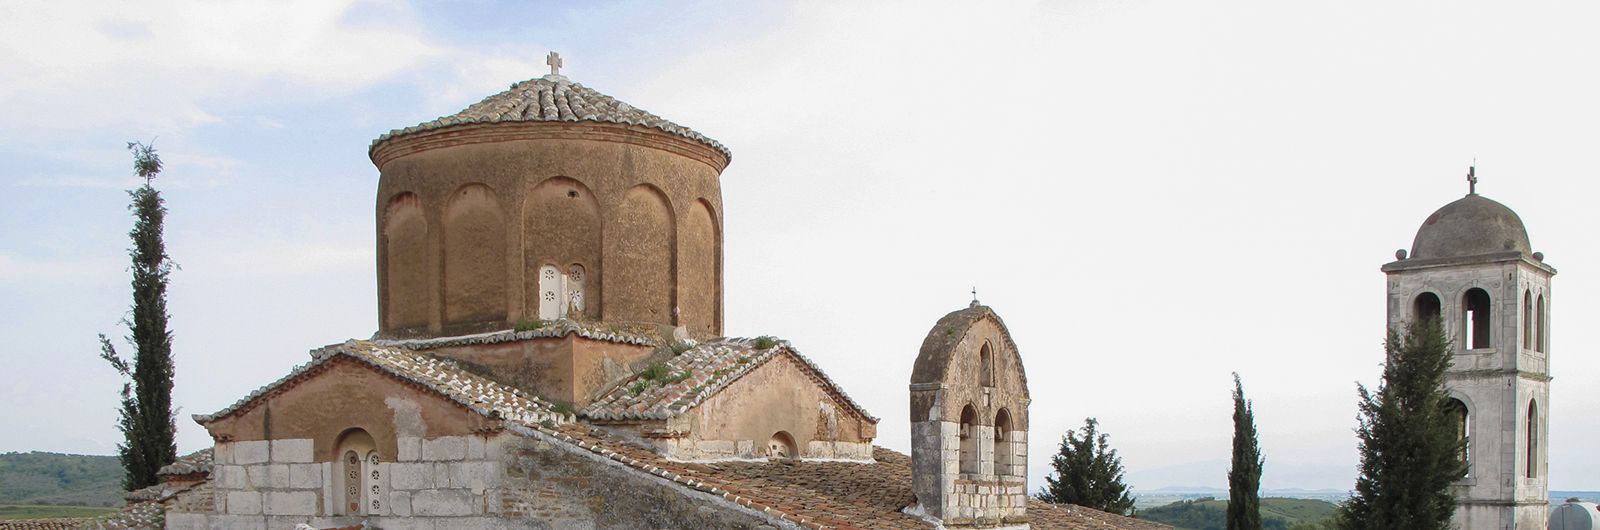 cupula iglesia albania